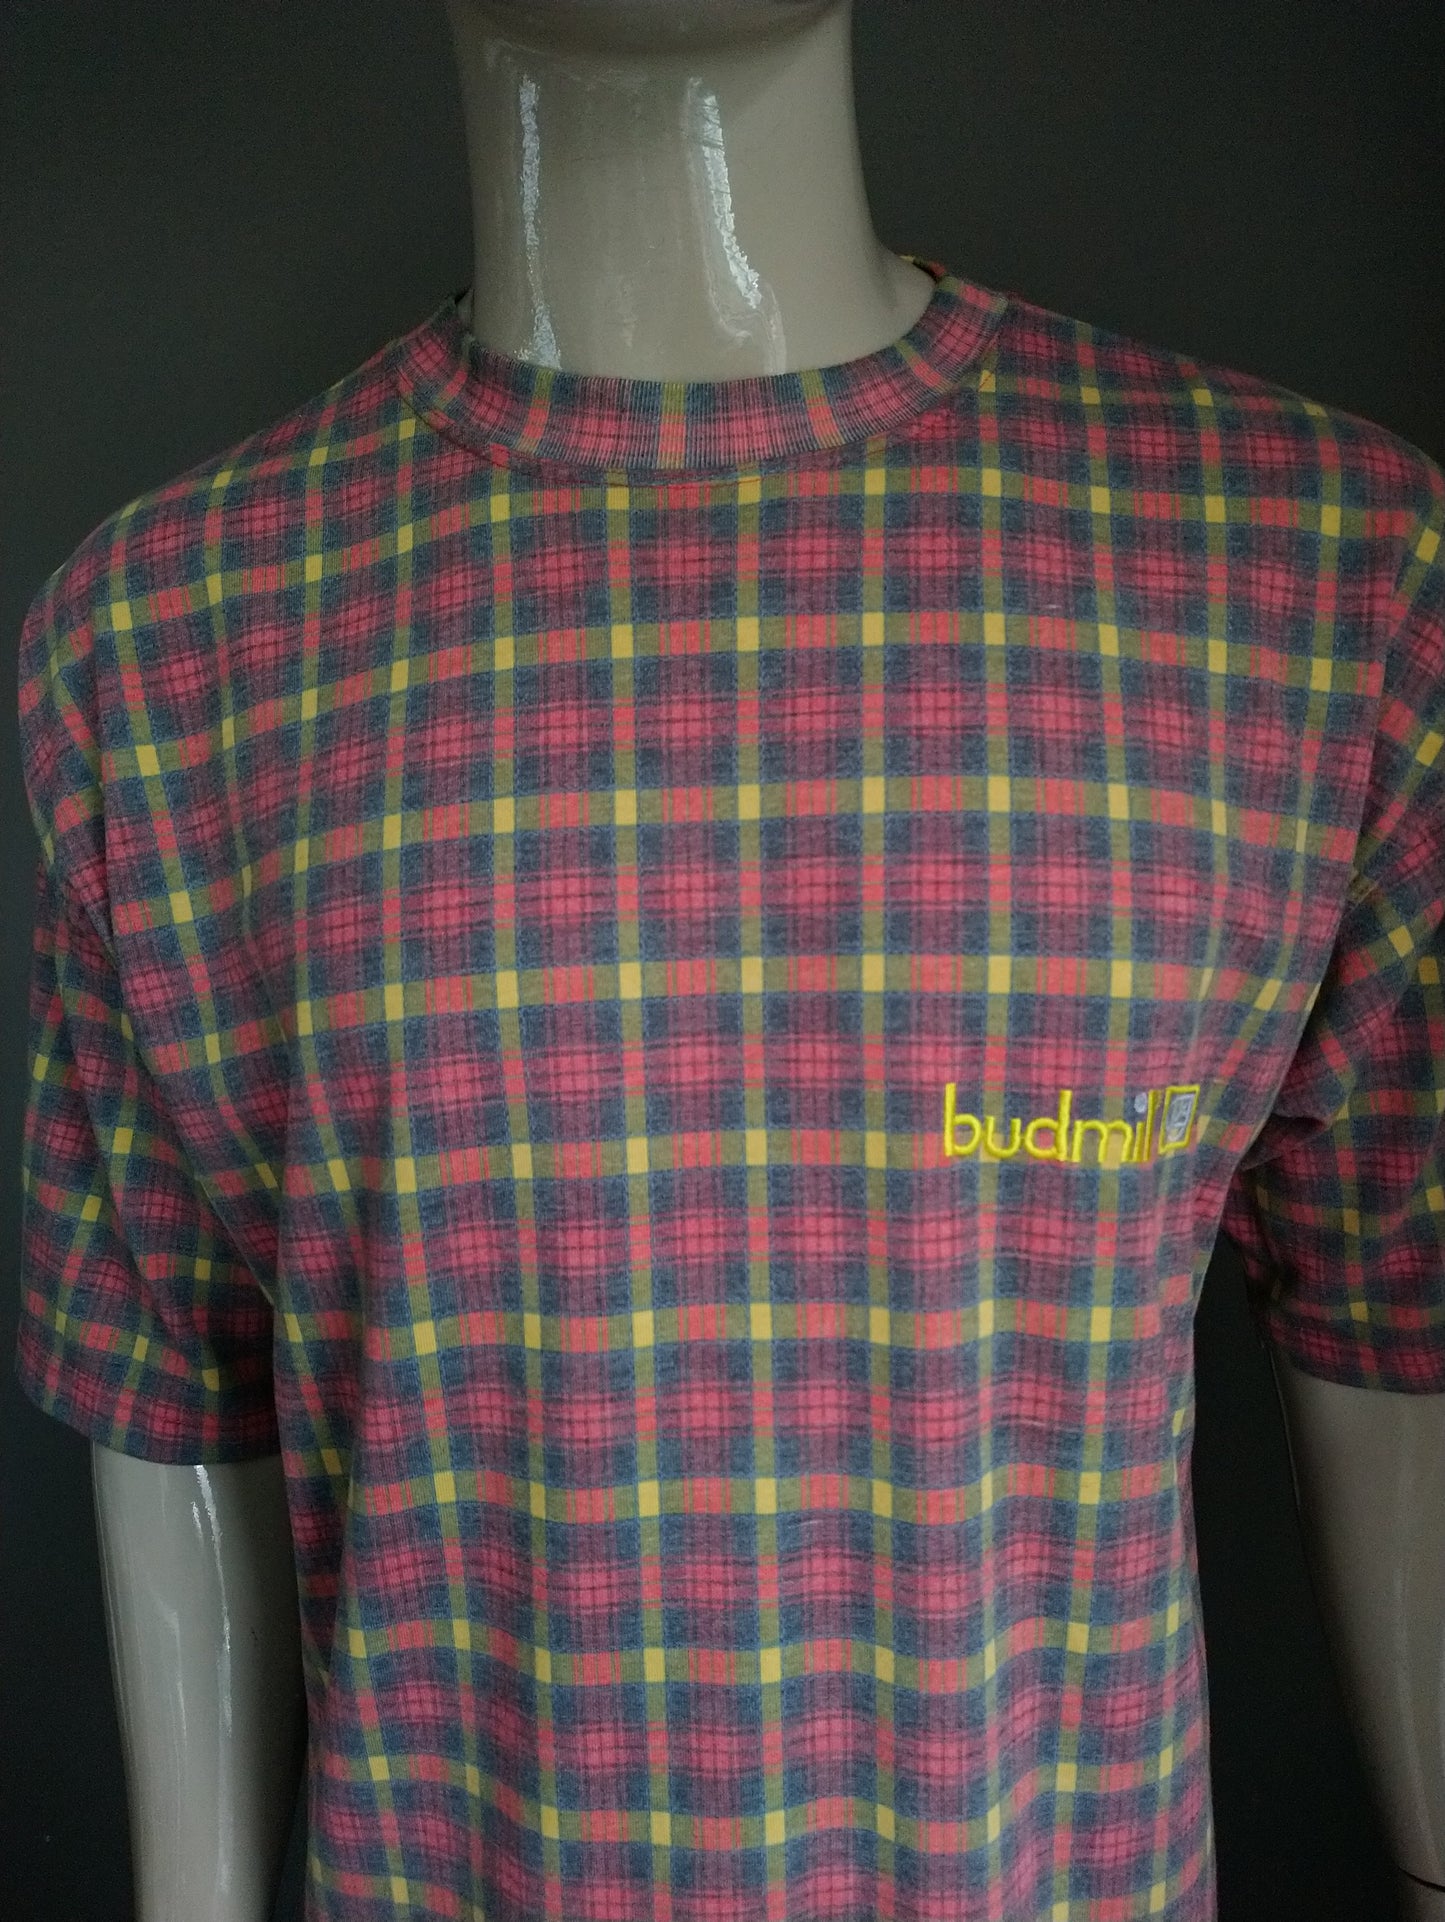 Vintage Budmil shirt. Rood Groen Geel geruit. Maat L.